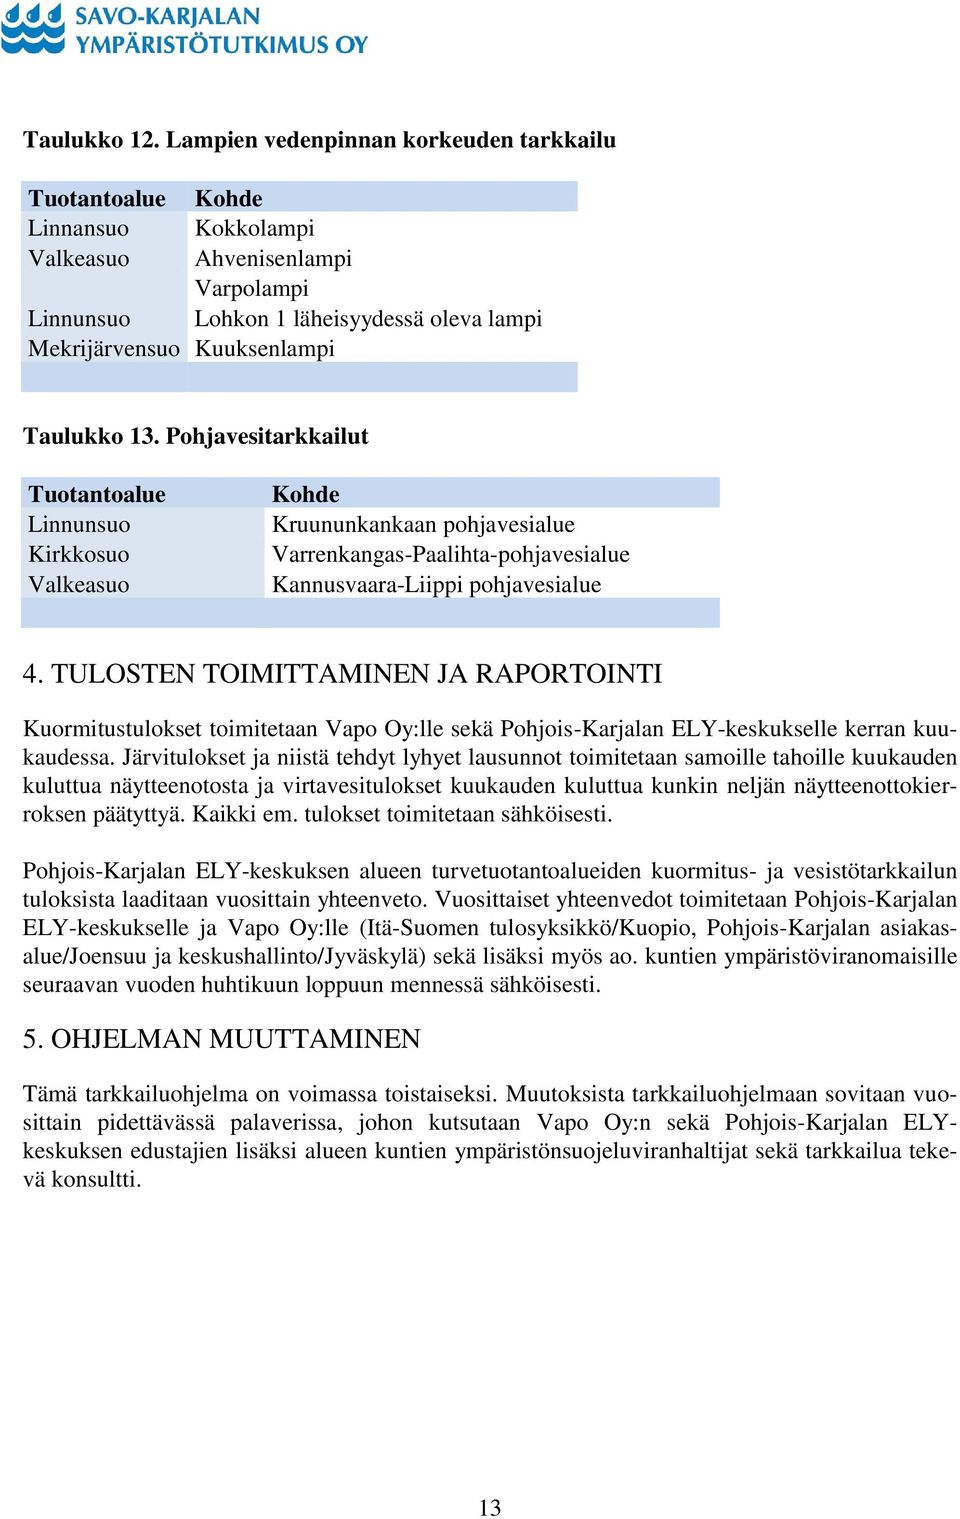 13. Pohjavesitarkkailut Tuotantoalue Linnunsuo Kirkkosuo Valkeasuo Kohde Kruununkankaan pohjavesialue Varrenkangas-Paalihta-pohjavesialue Kannusvaara-Liippi pohjavesialue 4.